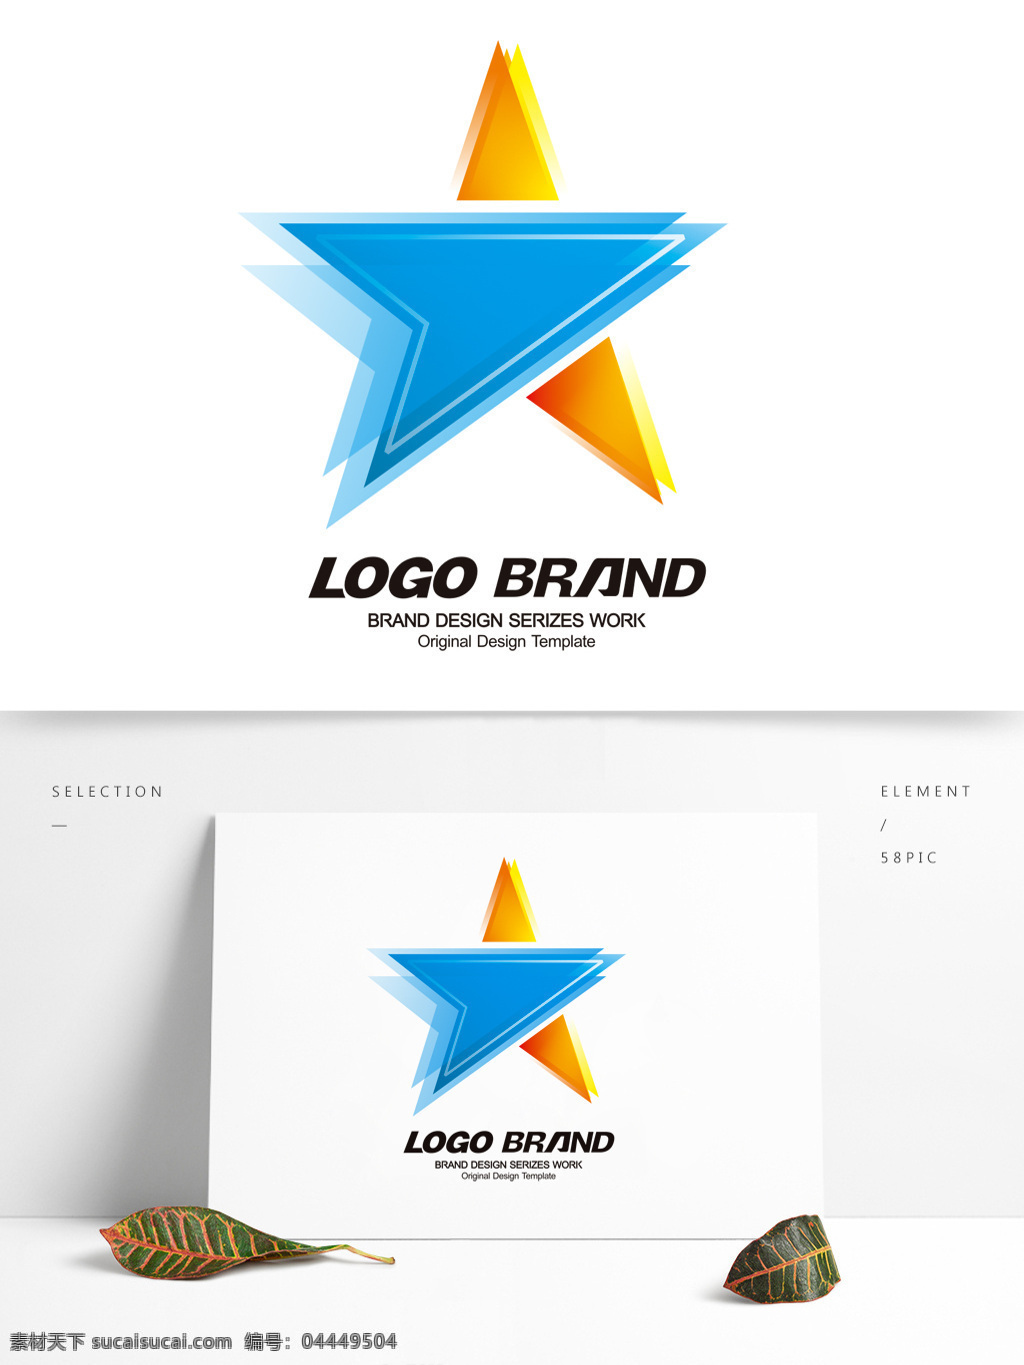 创意 蓝 黄 星形 logo 公司 标志设计 五星 标志 星形logo 科技 游戏公司 a 字母 企业 企业标志设计 公司标志设计 会徽标志设计